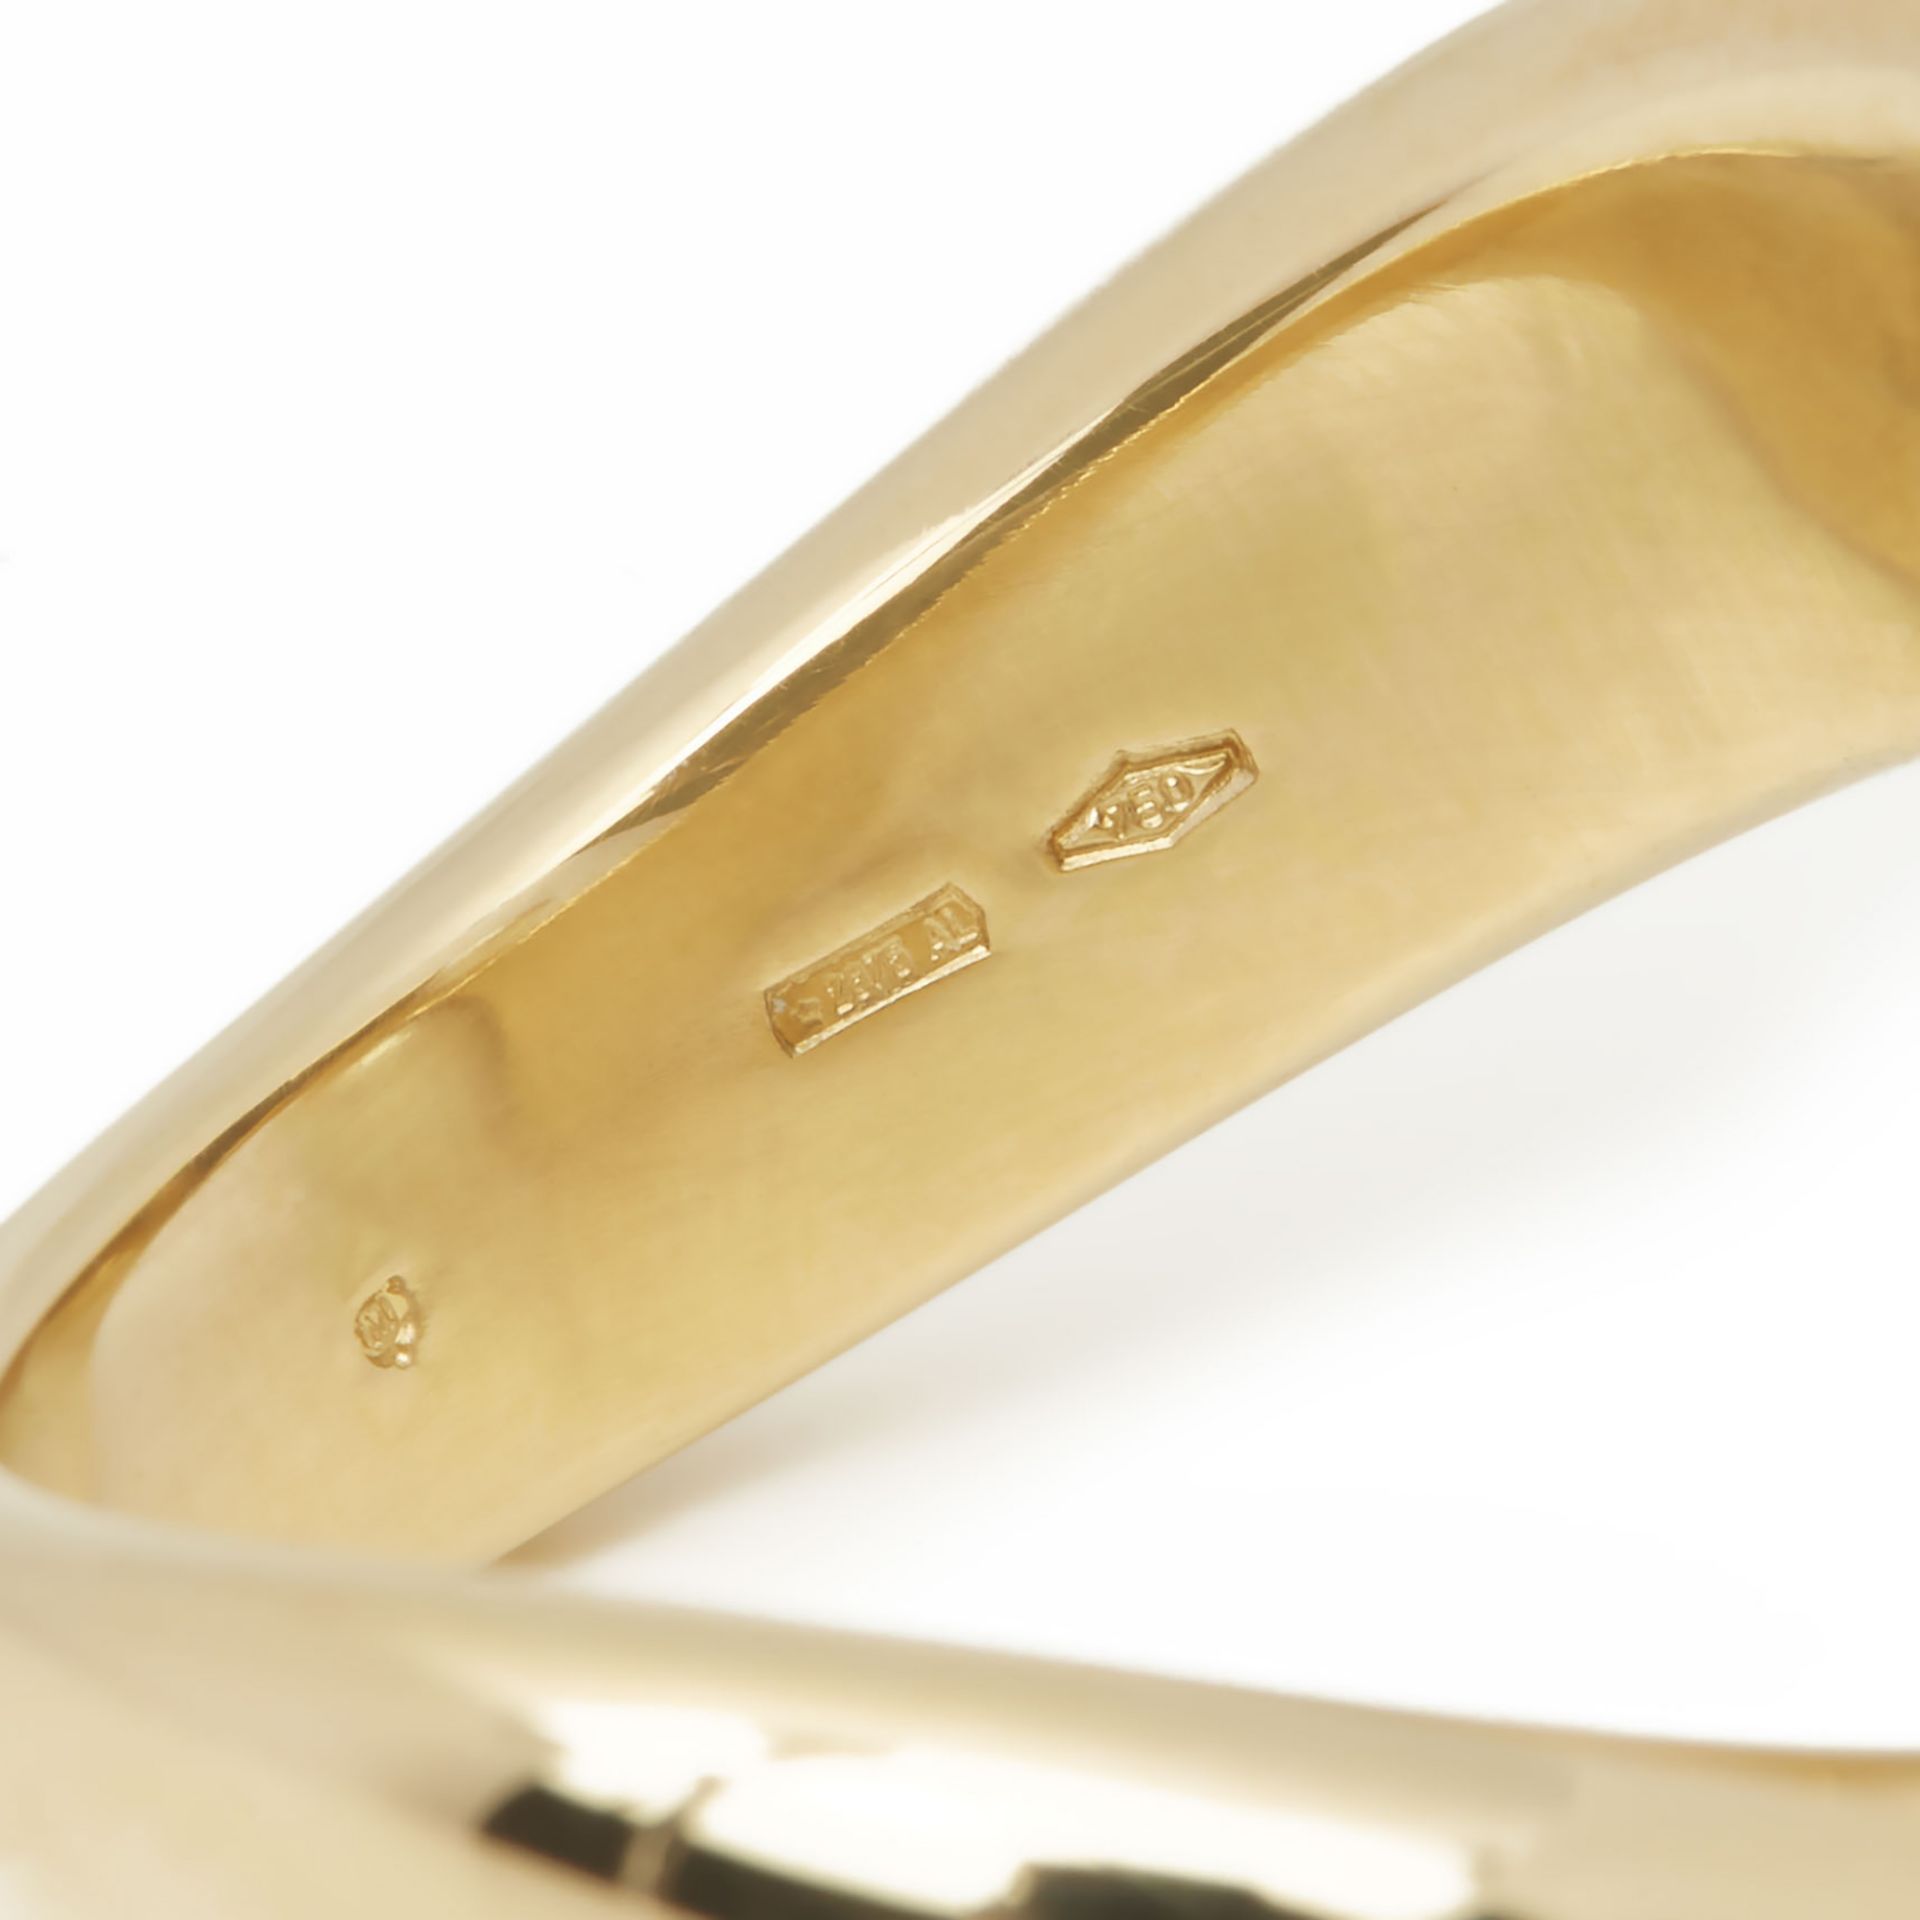 Mikimoto 18k Yellow Gold Akoya Pearl & Tourmaline Ring - Image 5 of 8